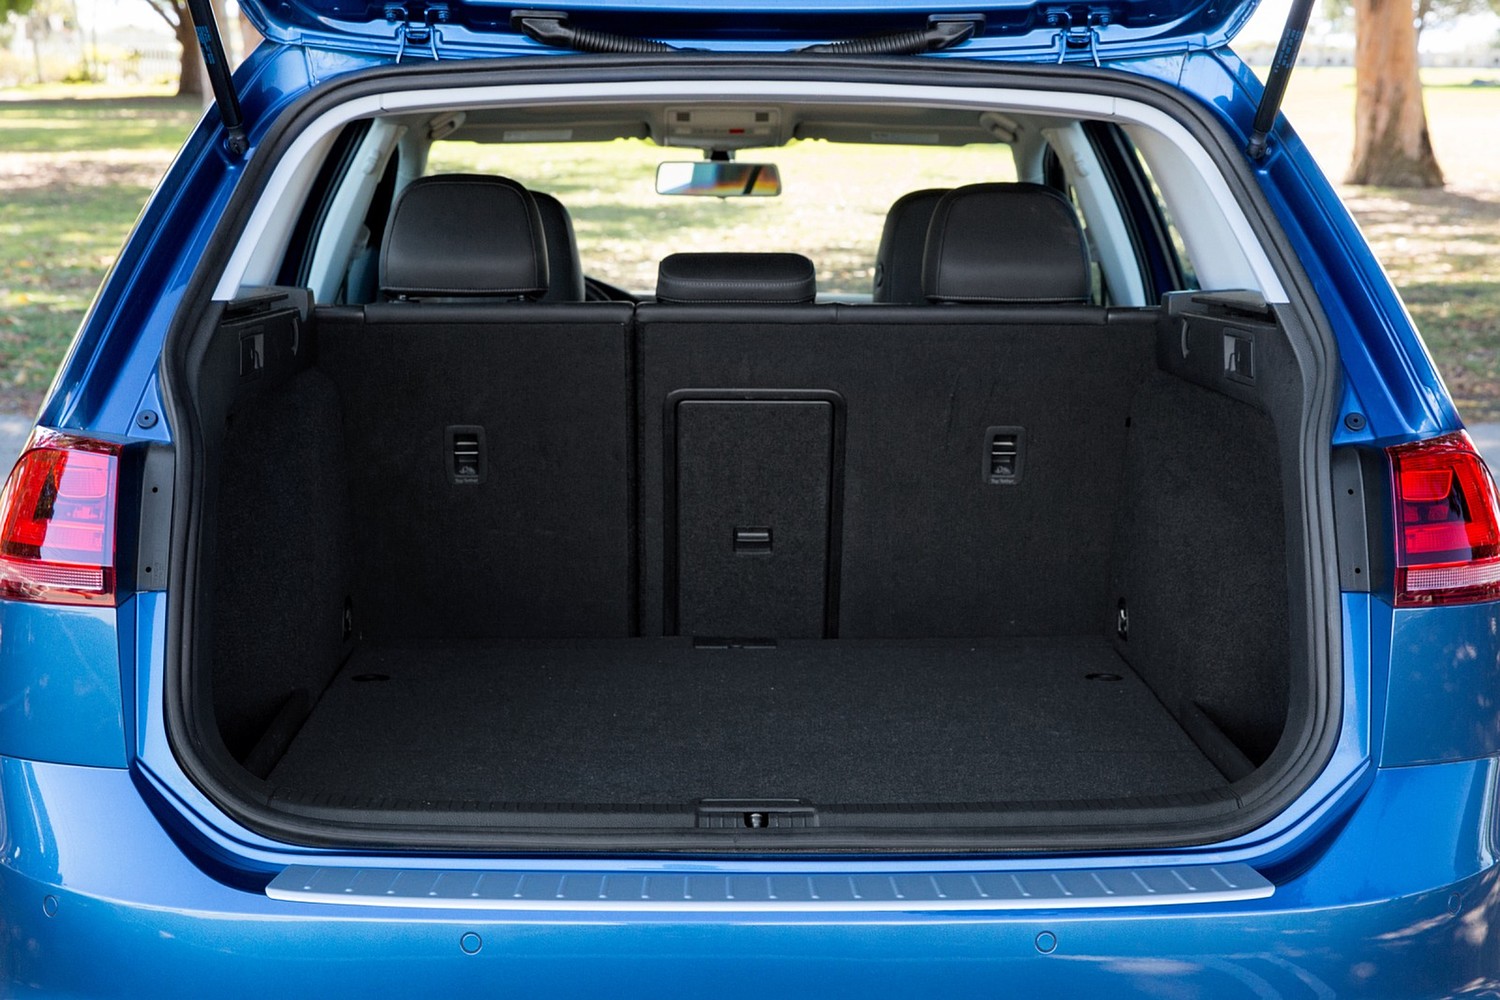 Volkswagen Golf SportWagen TSI SEL Wagon Cargo Area (2015 model year shown)